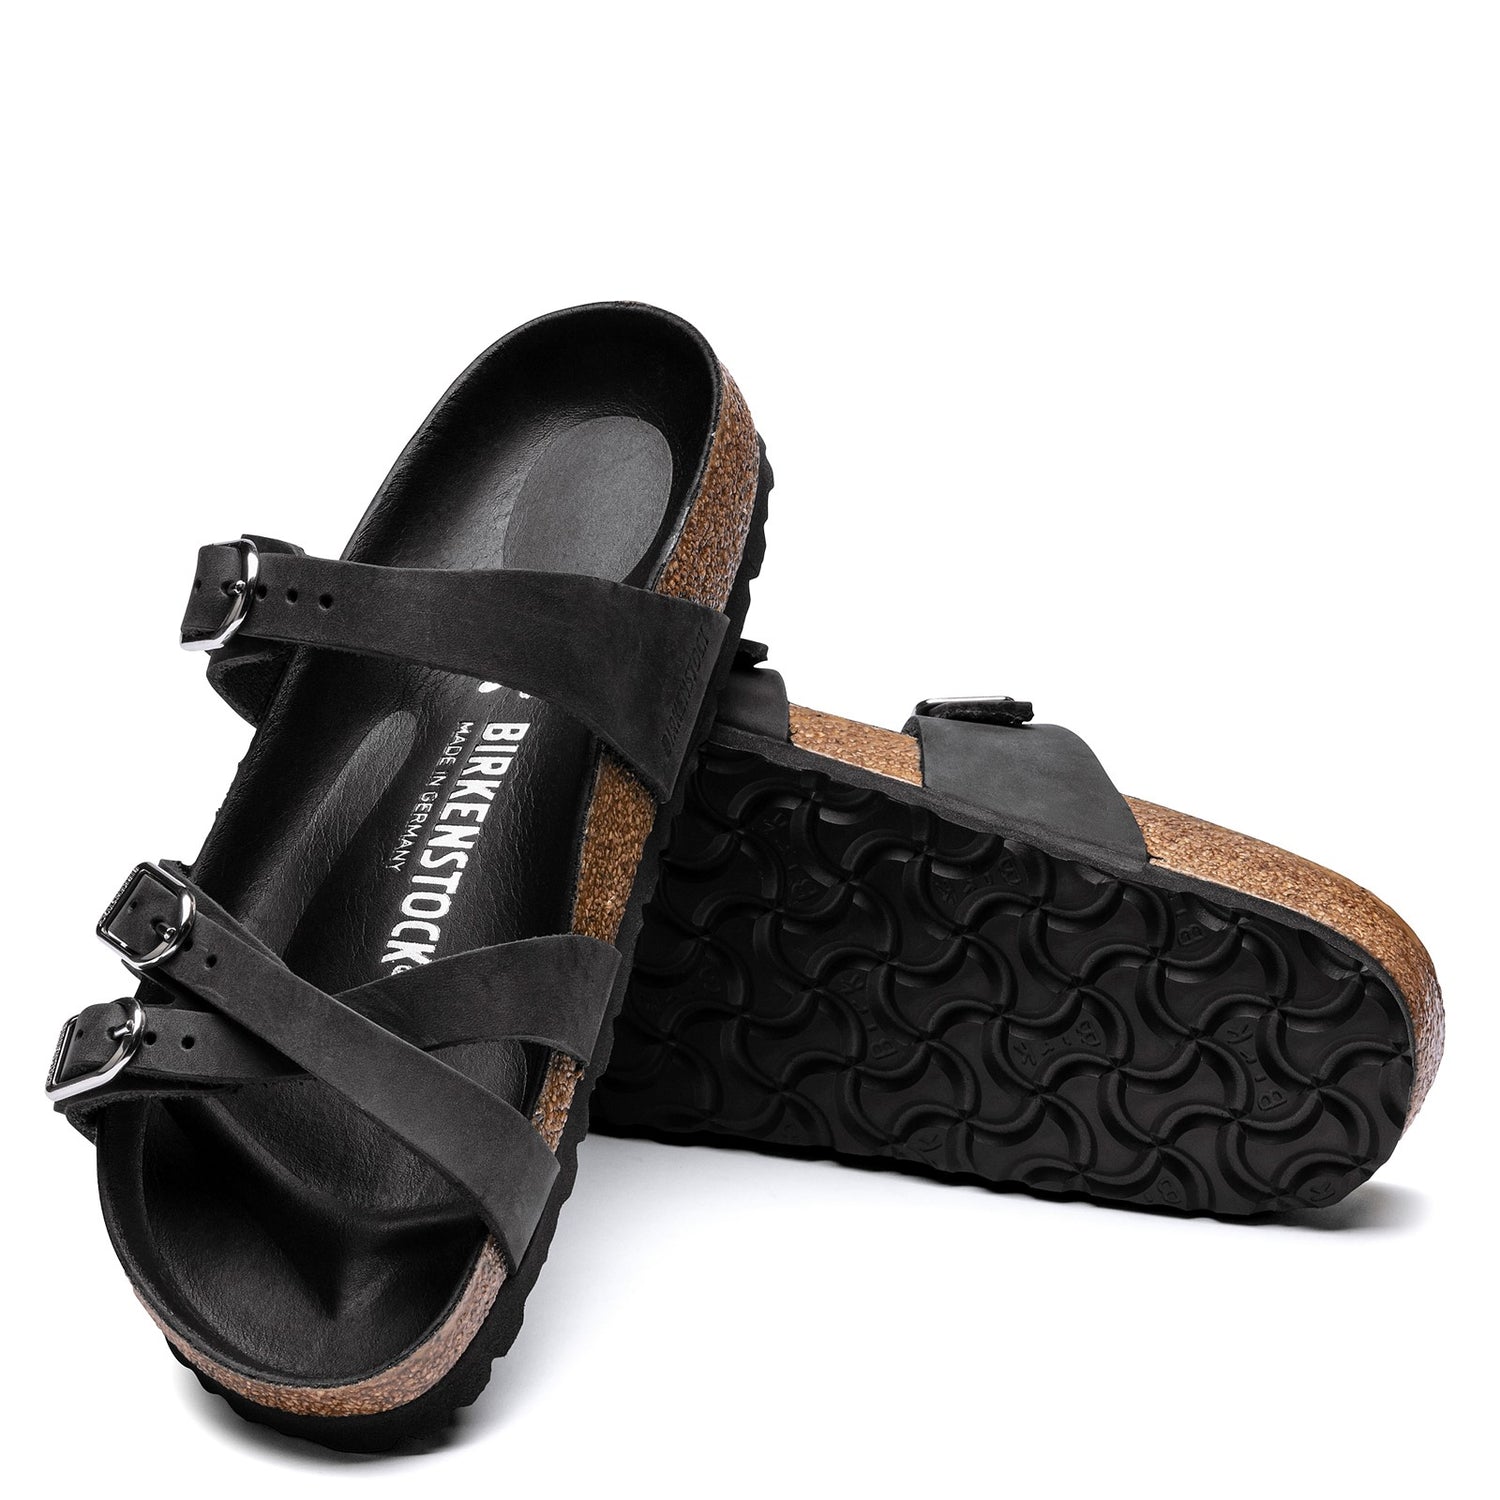 Peltz Shoes  Women's Birkenstock Franca Sandal - Narrow Width BLACK GRAY 1017 566 N